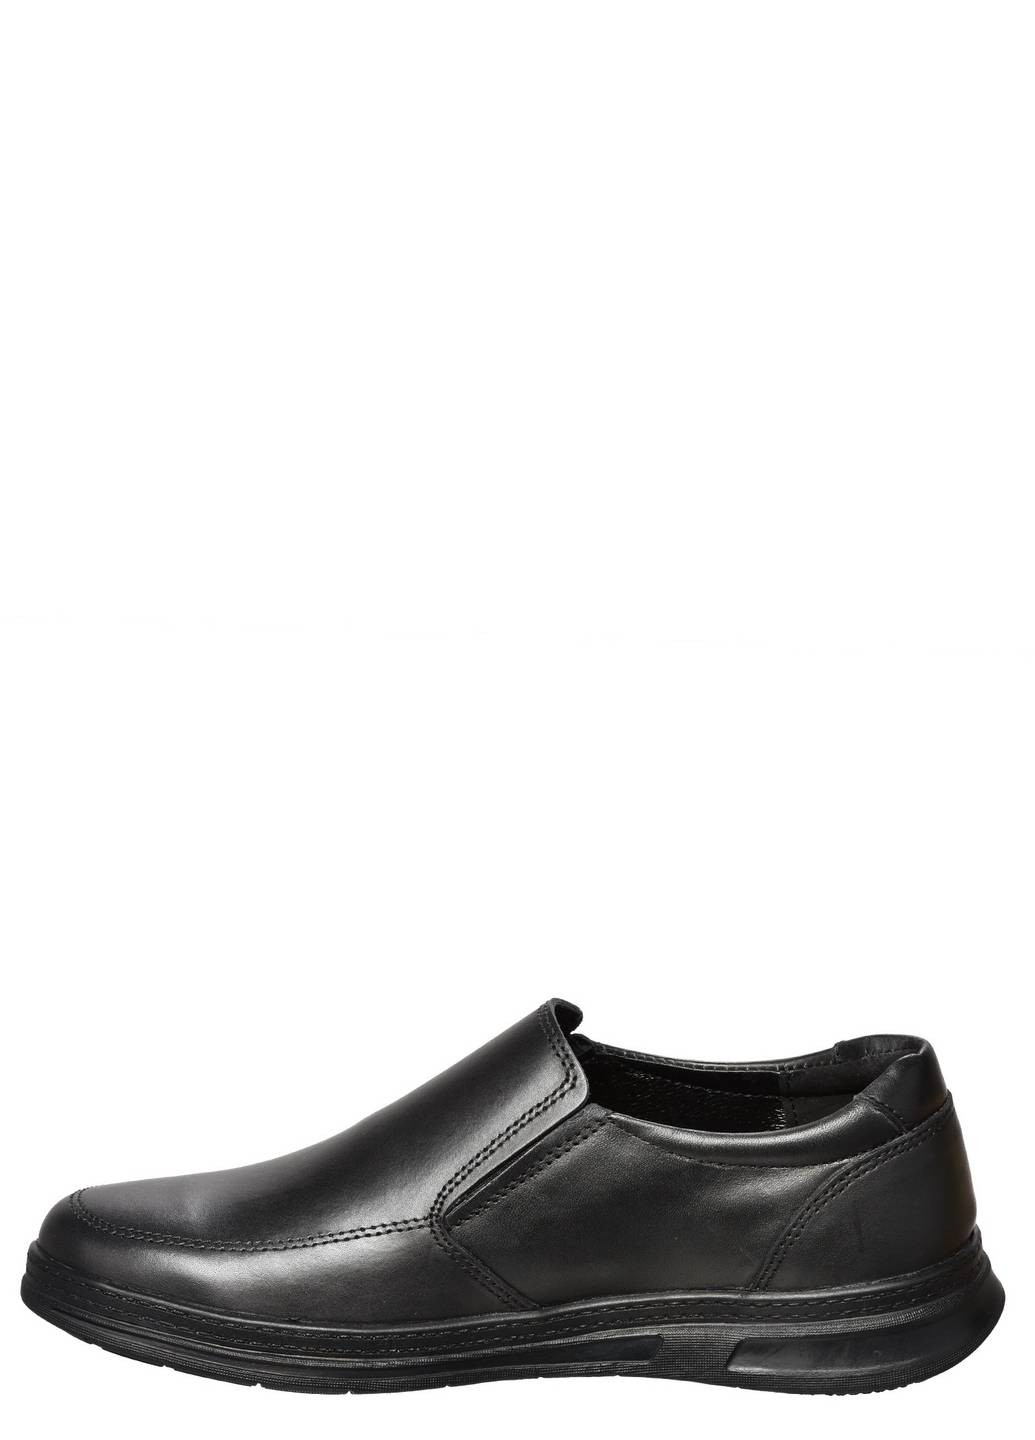 Черные туфли мужские Casual без шнурков